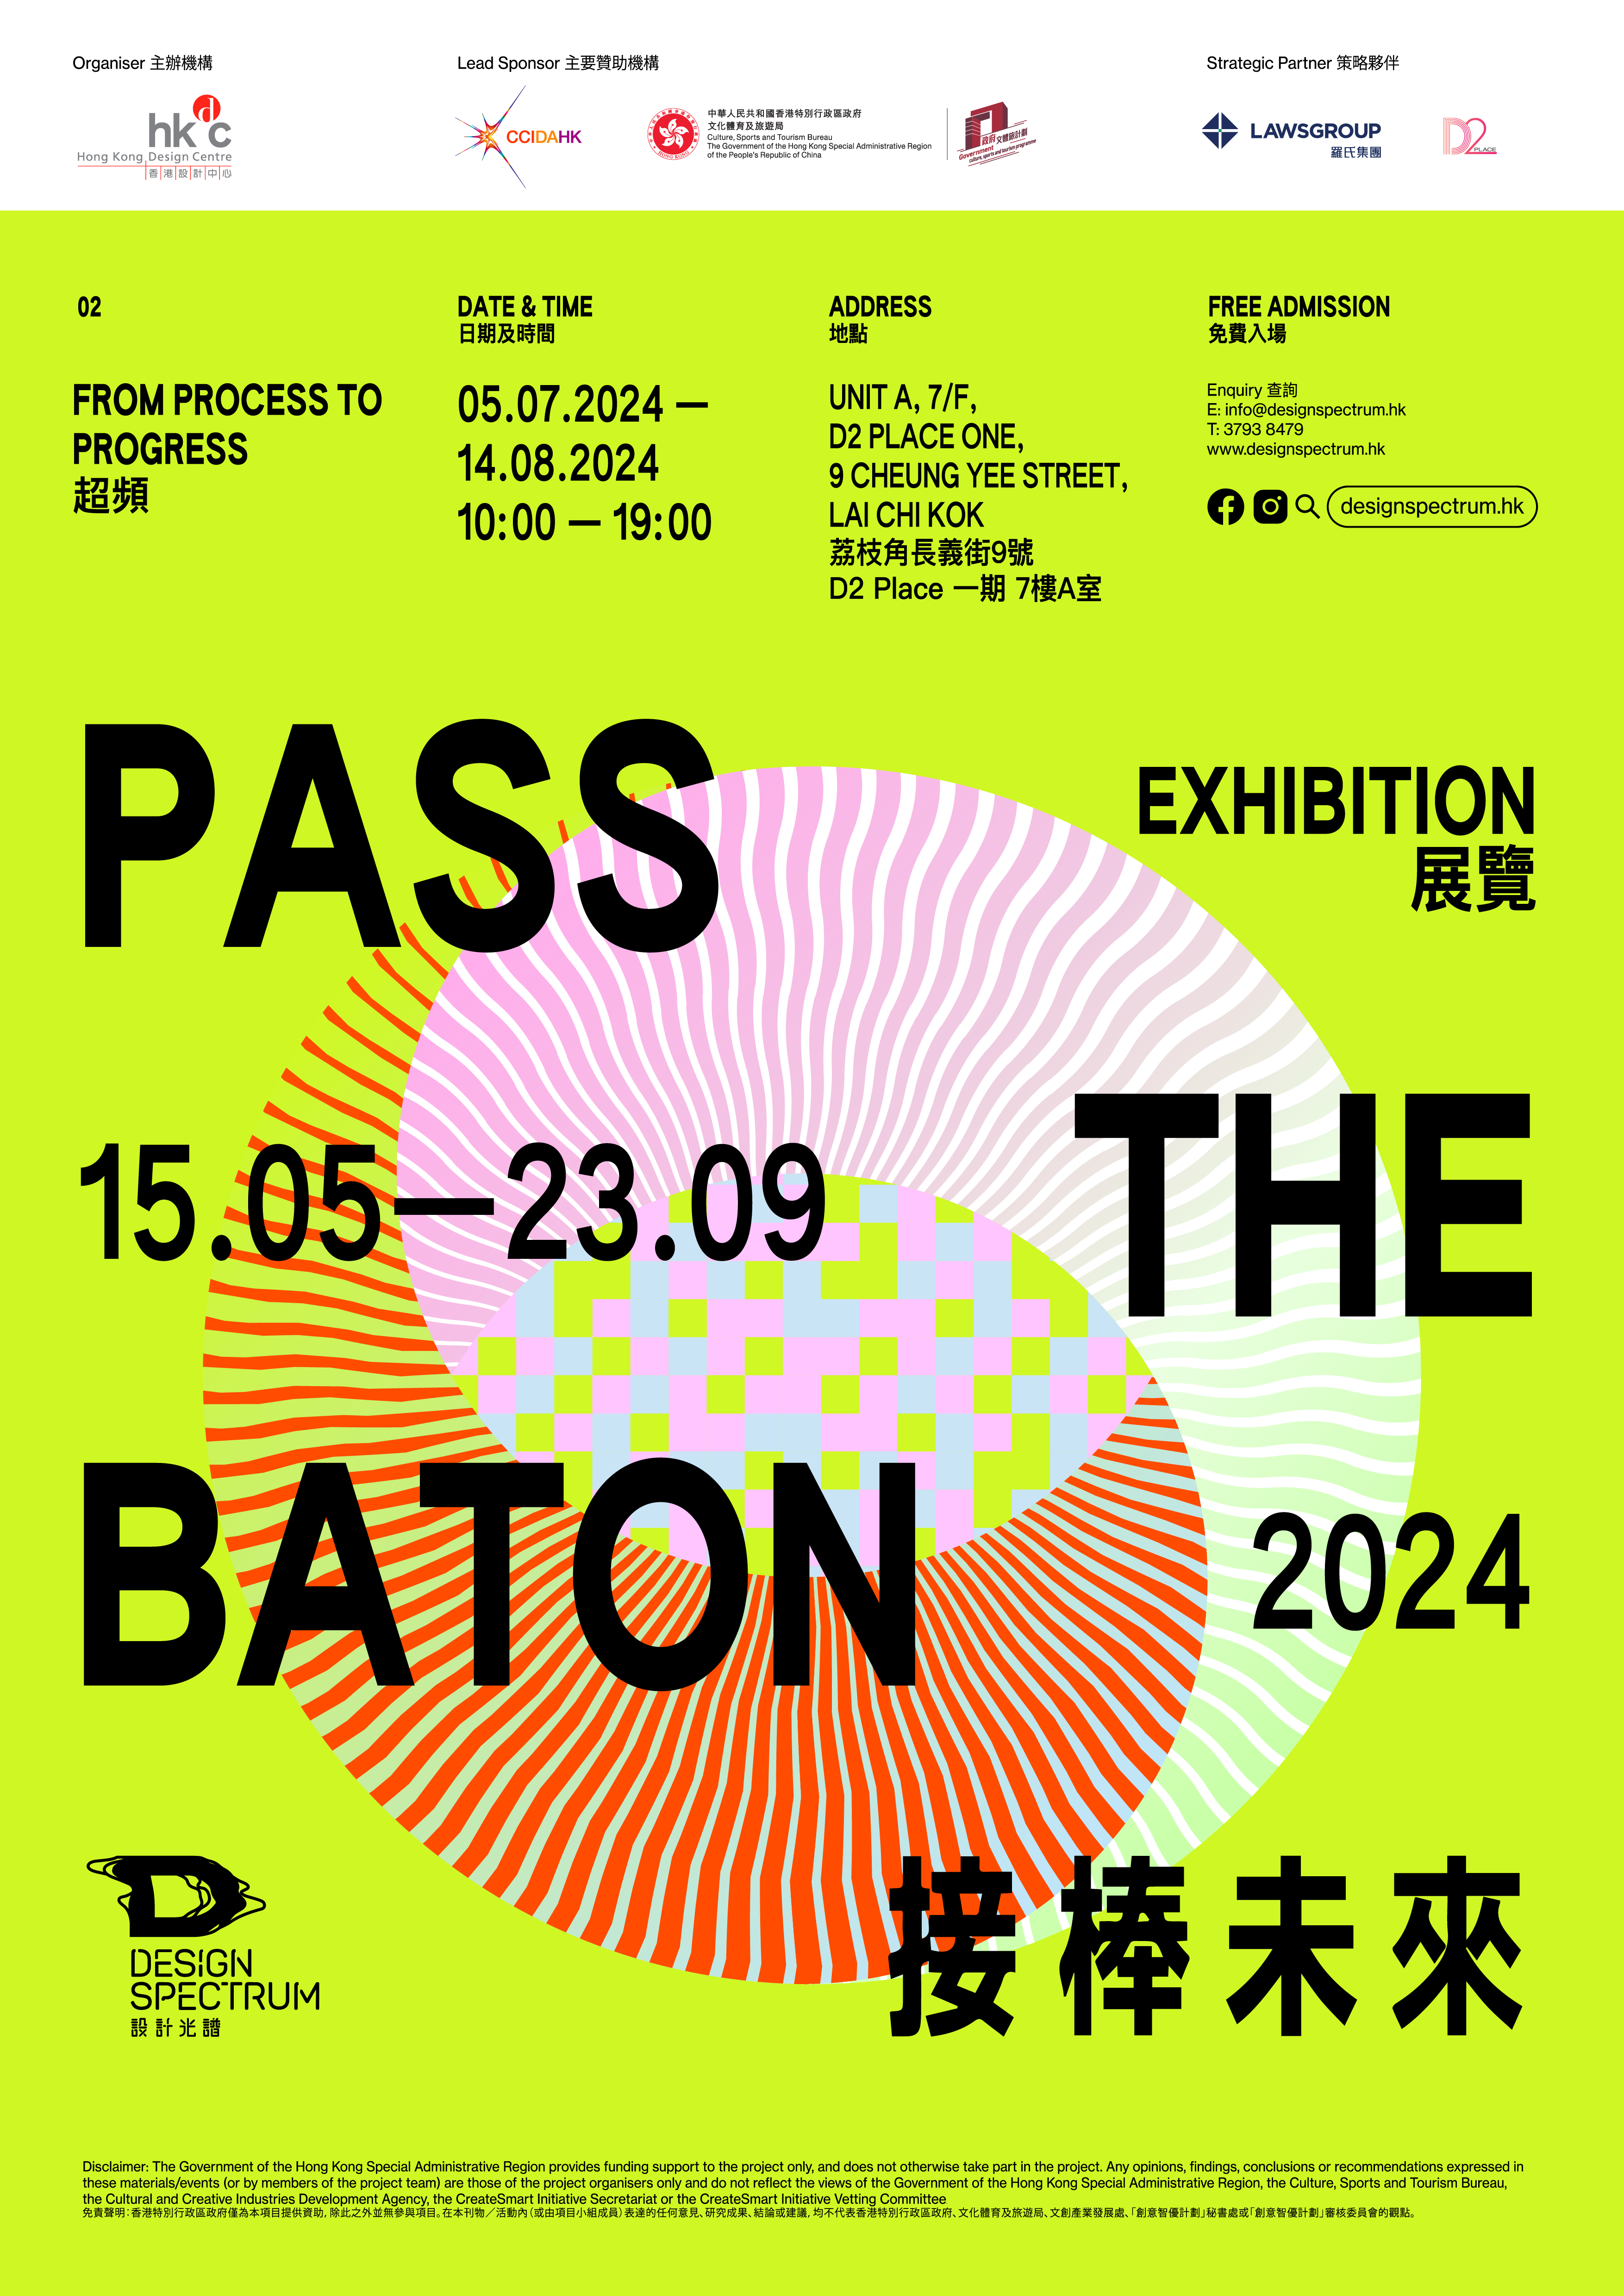 香港设计中心「设计光谱」呈献——「接棒未来」展览 第二部分「超频」接力登场 超越既定想象 以设计力量推动创意过程之演进